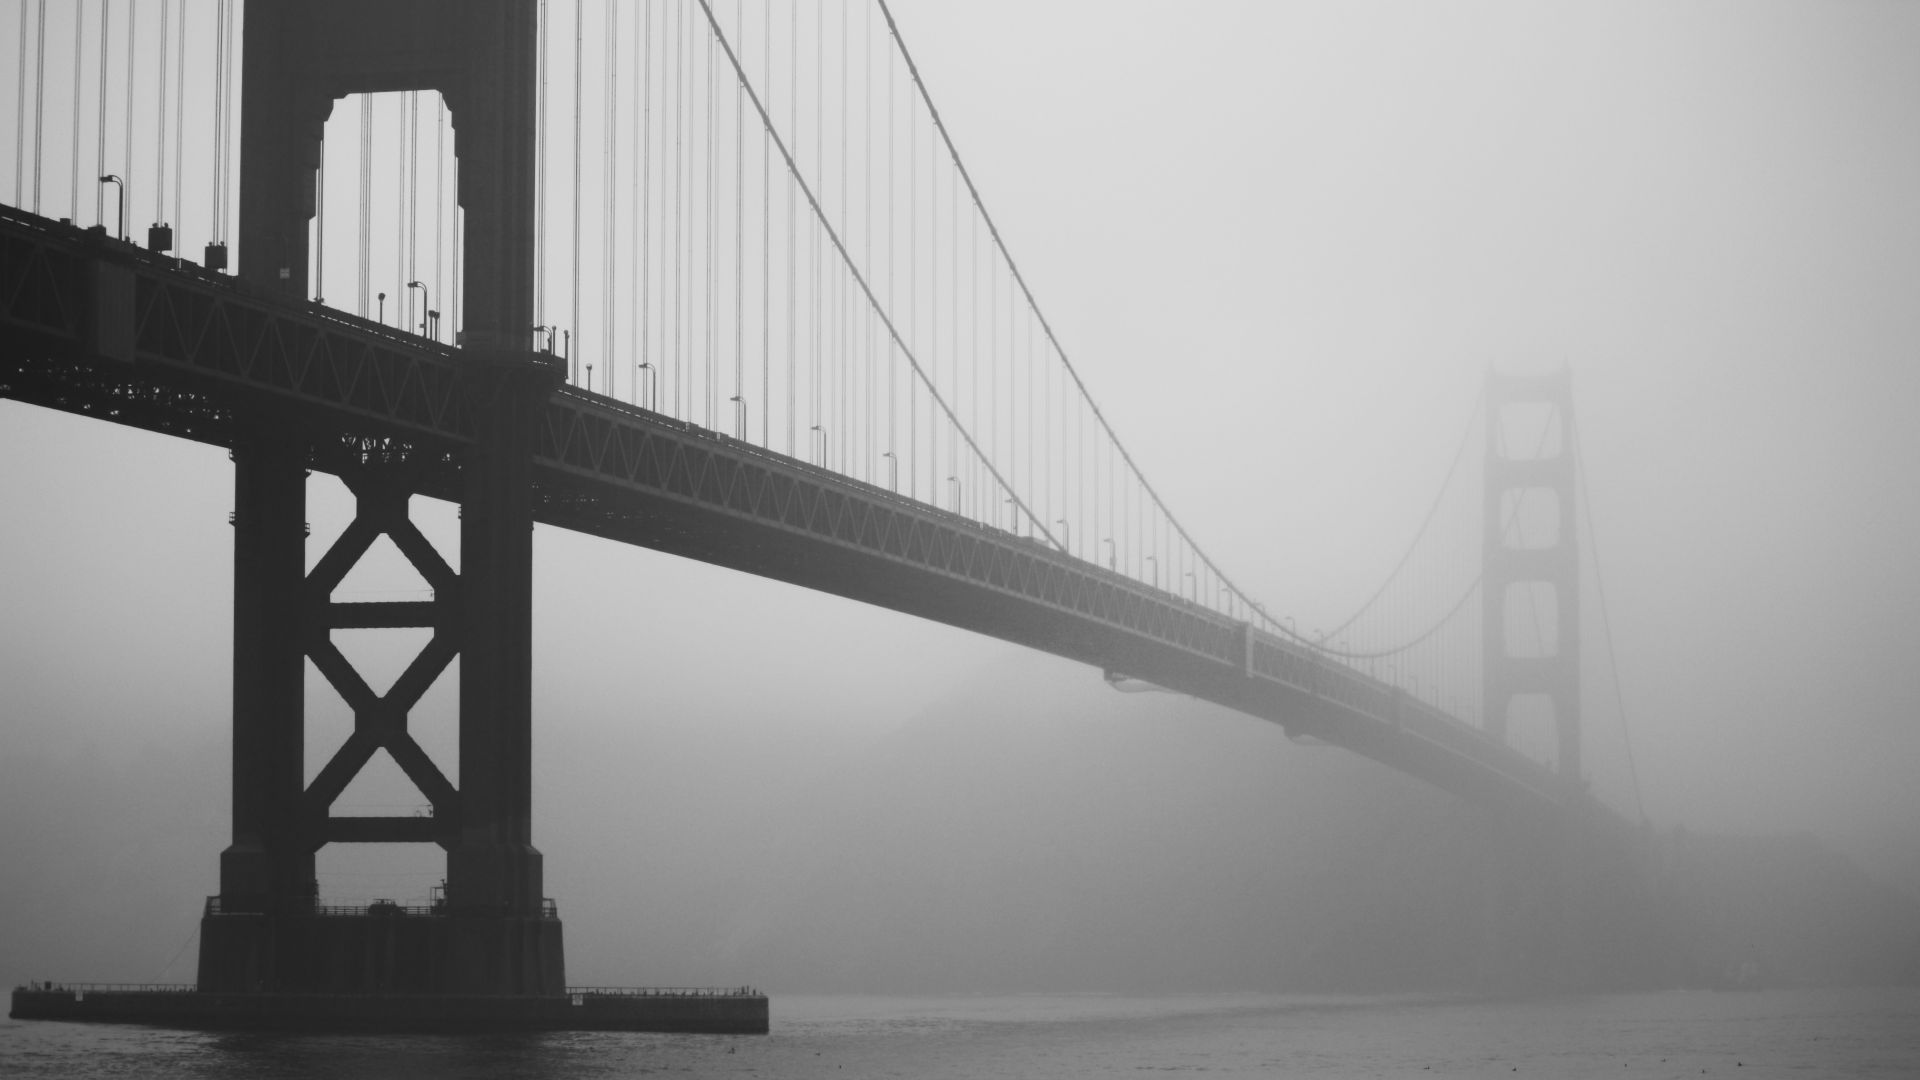 Лондонский мост, Лондон, Великобритания, туман, путешествия, туризм, London bridge, London, UK, fog, travel, tourism (horizontal)